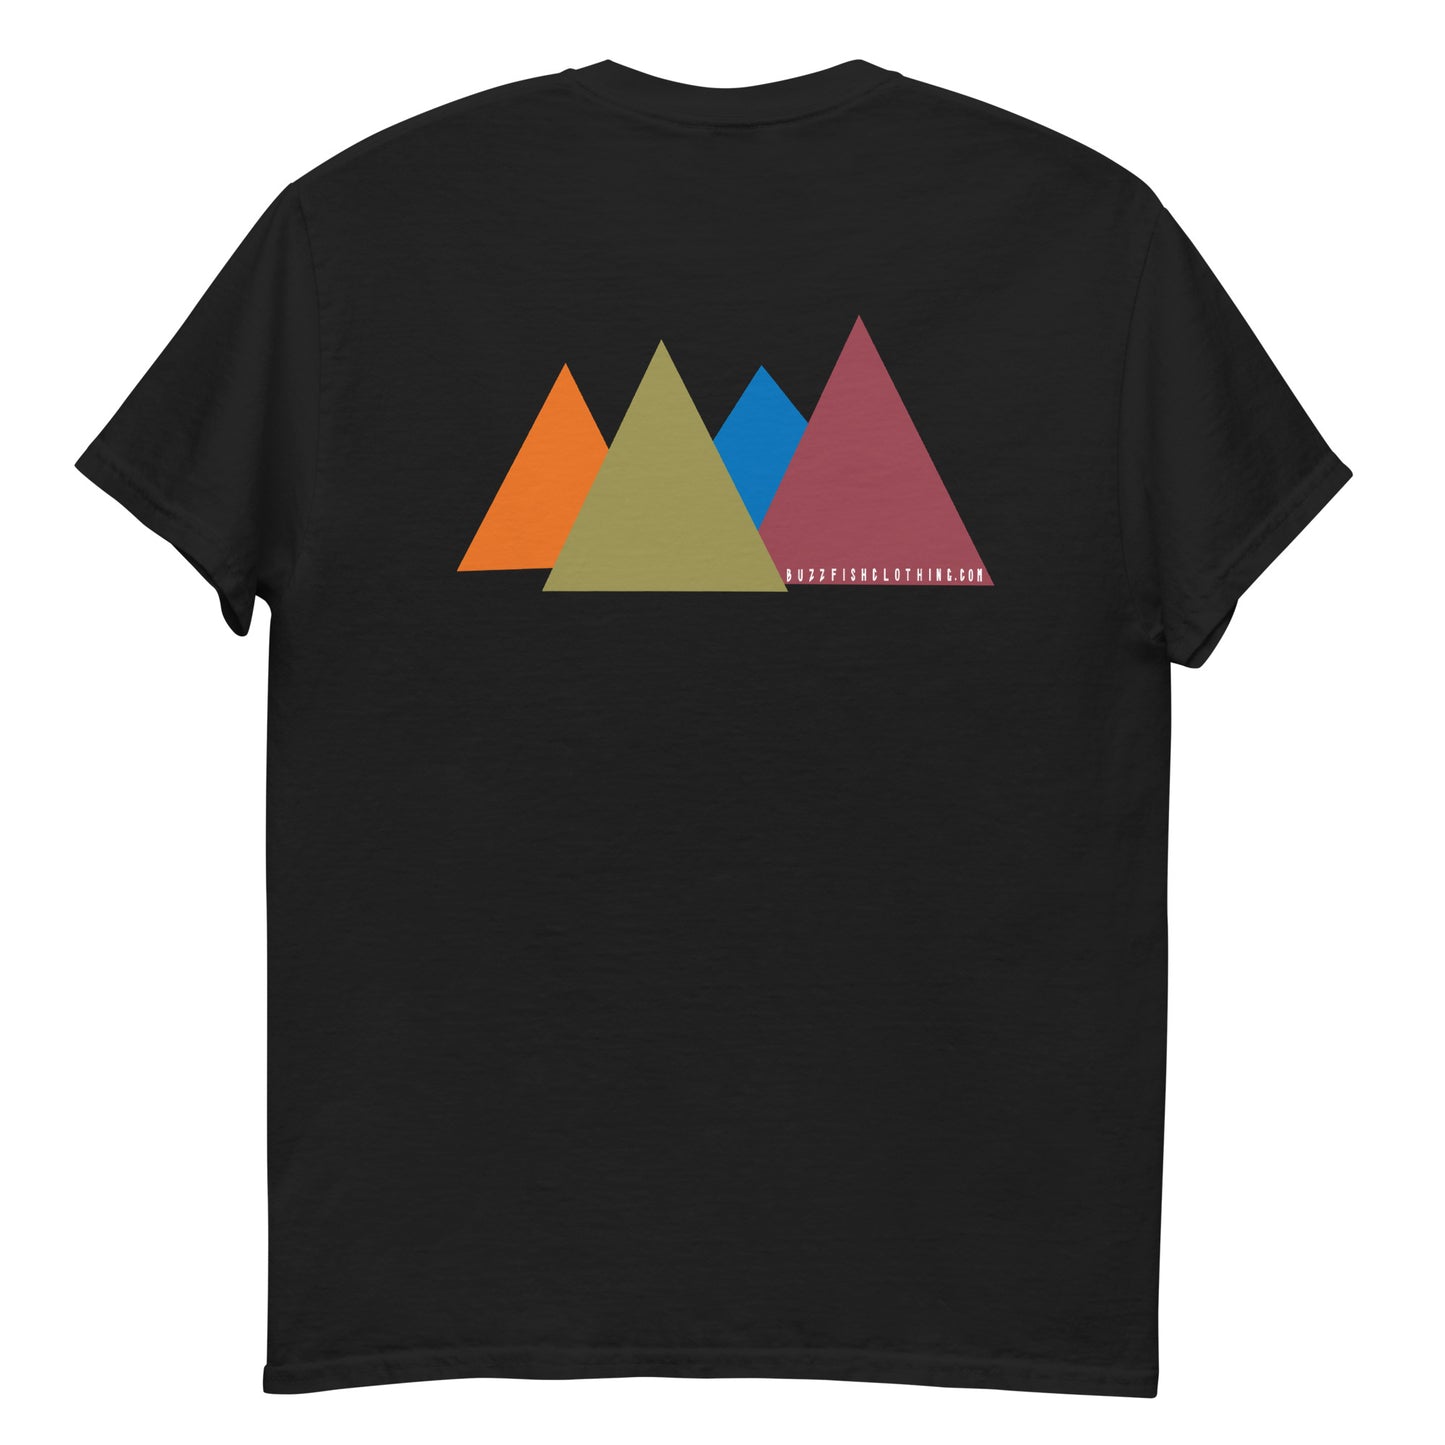 Spikey mountains logo Tee